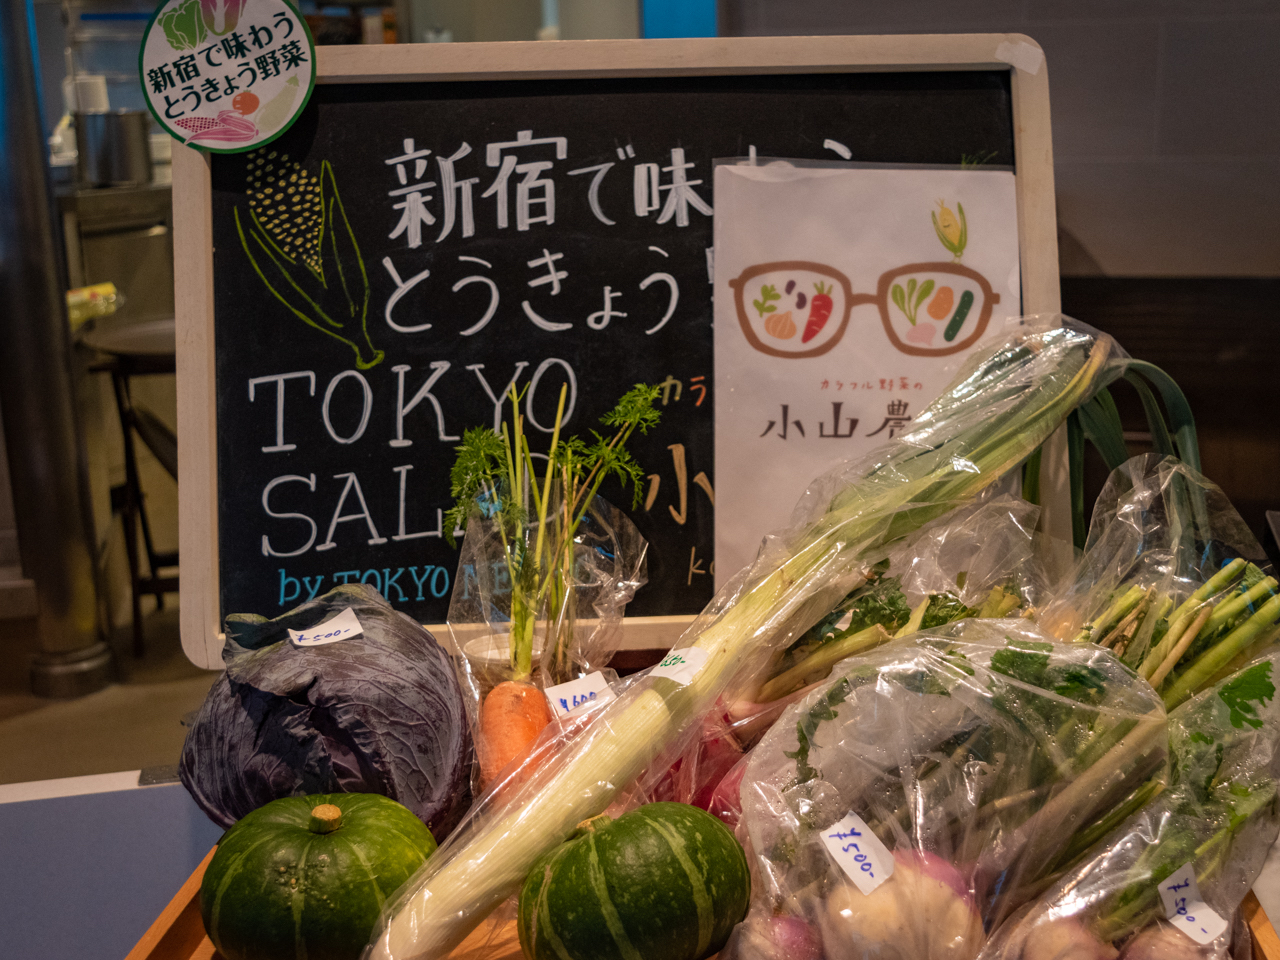 購入もできる“小山農園”の野菜。